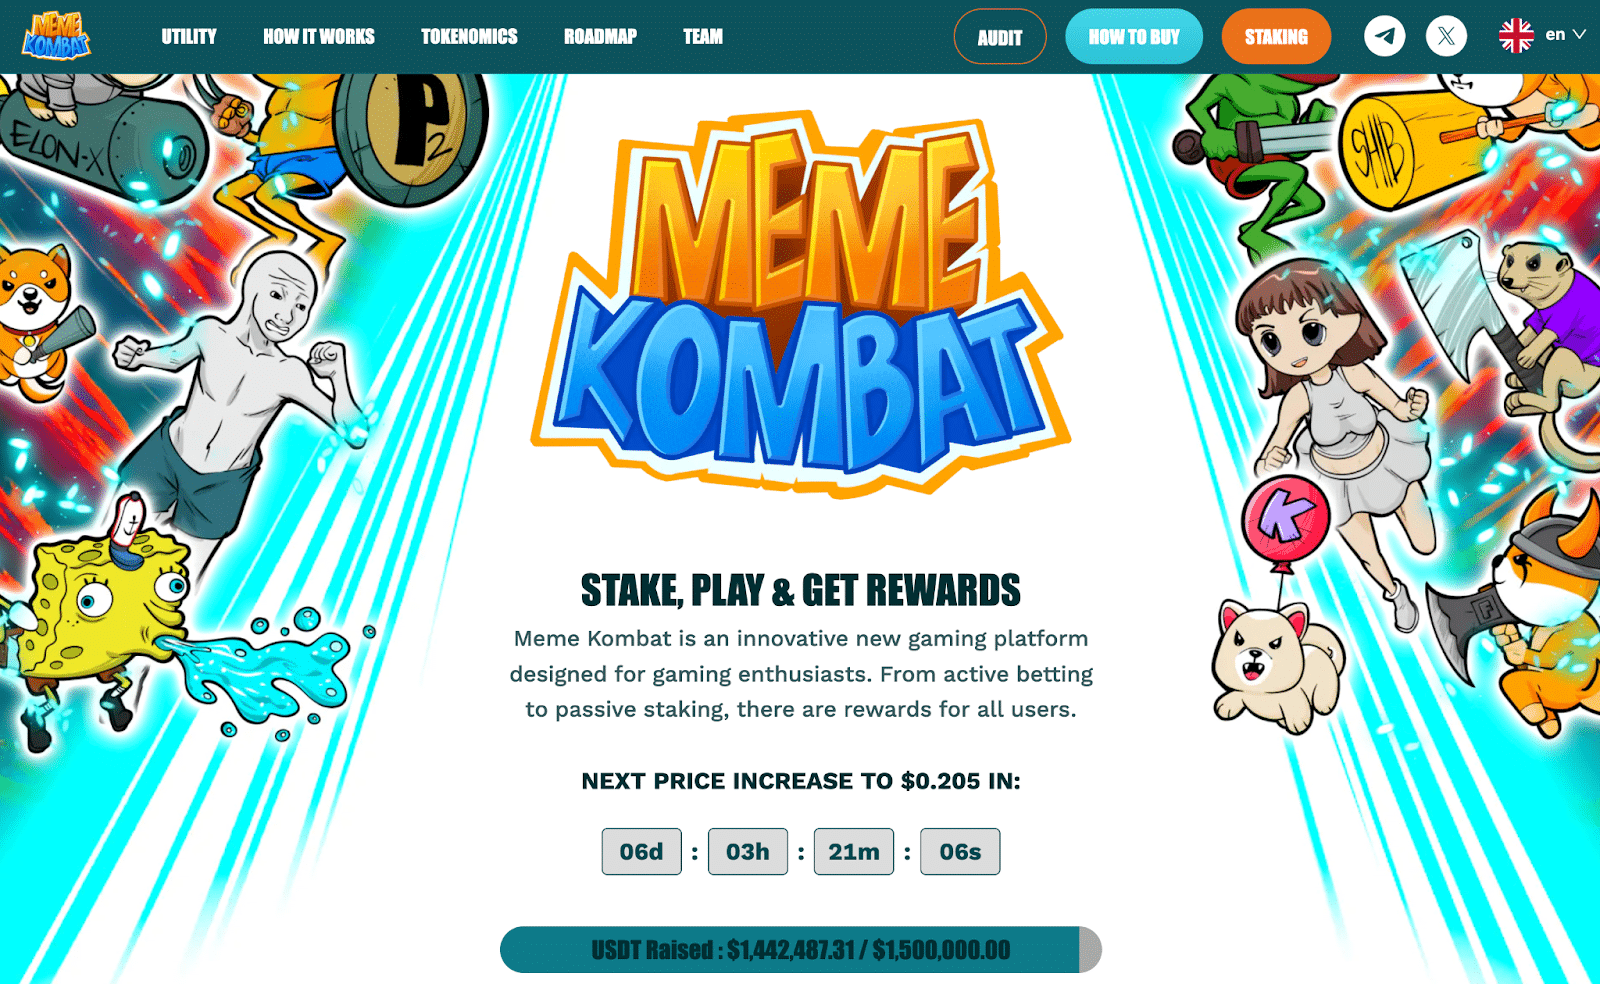 GA黄金甲Pepe币价格上涨25%　Meme Kombat为独特游戏平台筹集近150万美元　或将迎来100倍增长